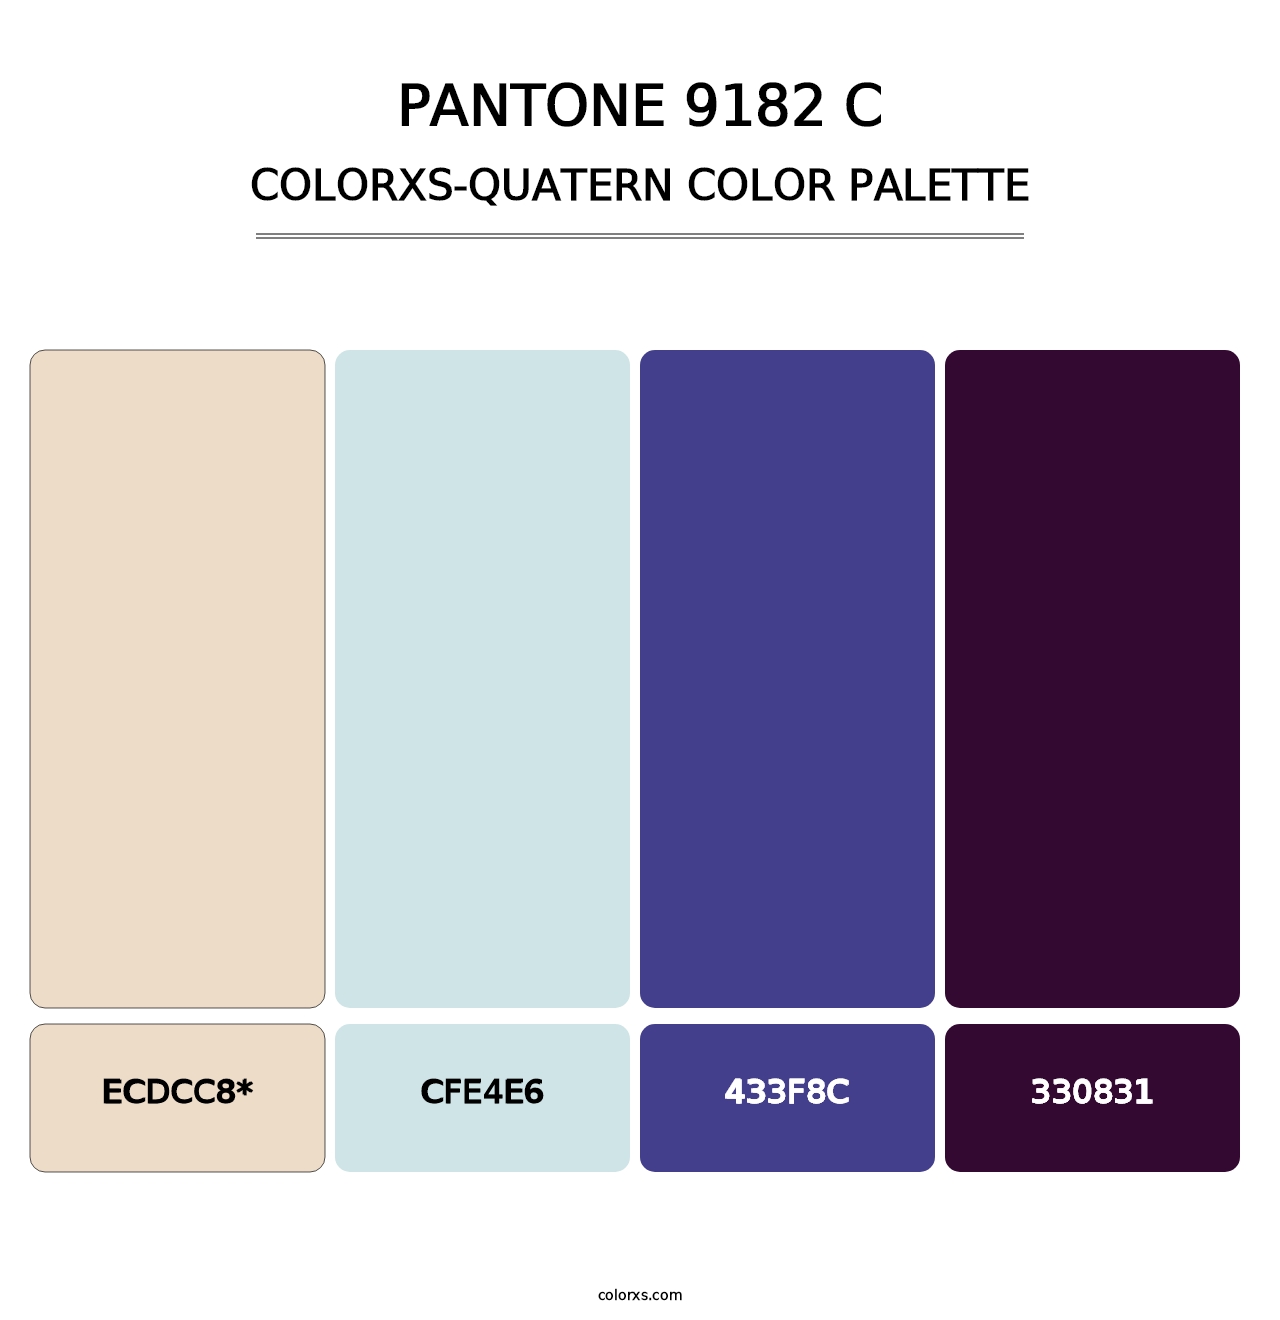 PANTONE 9182 C - Colorxs Quad Palette